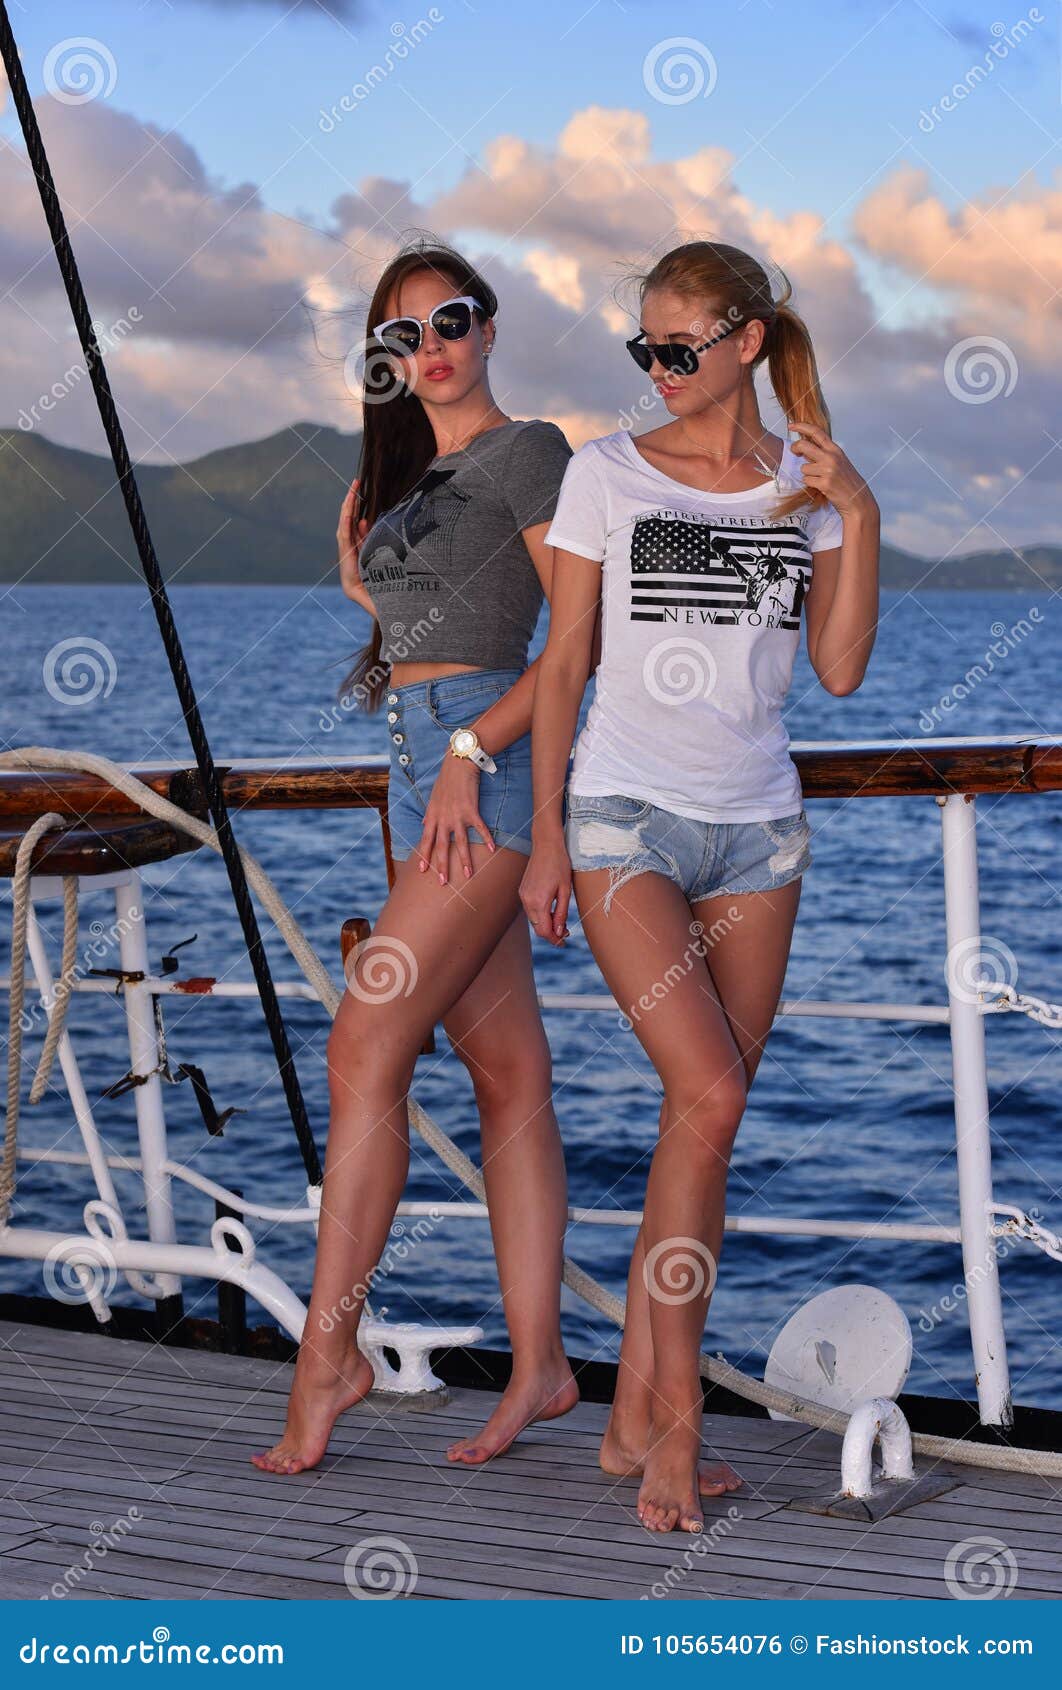 Onleesbaar Discipline fluit Jonge Sexy Mooie Vrouwen Die Op De Boot in Tropisch Land Varen Stock Foto -  Image of zeilboot, levensstijl: 105654076